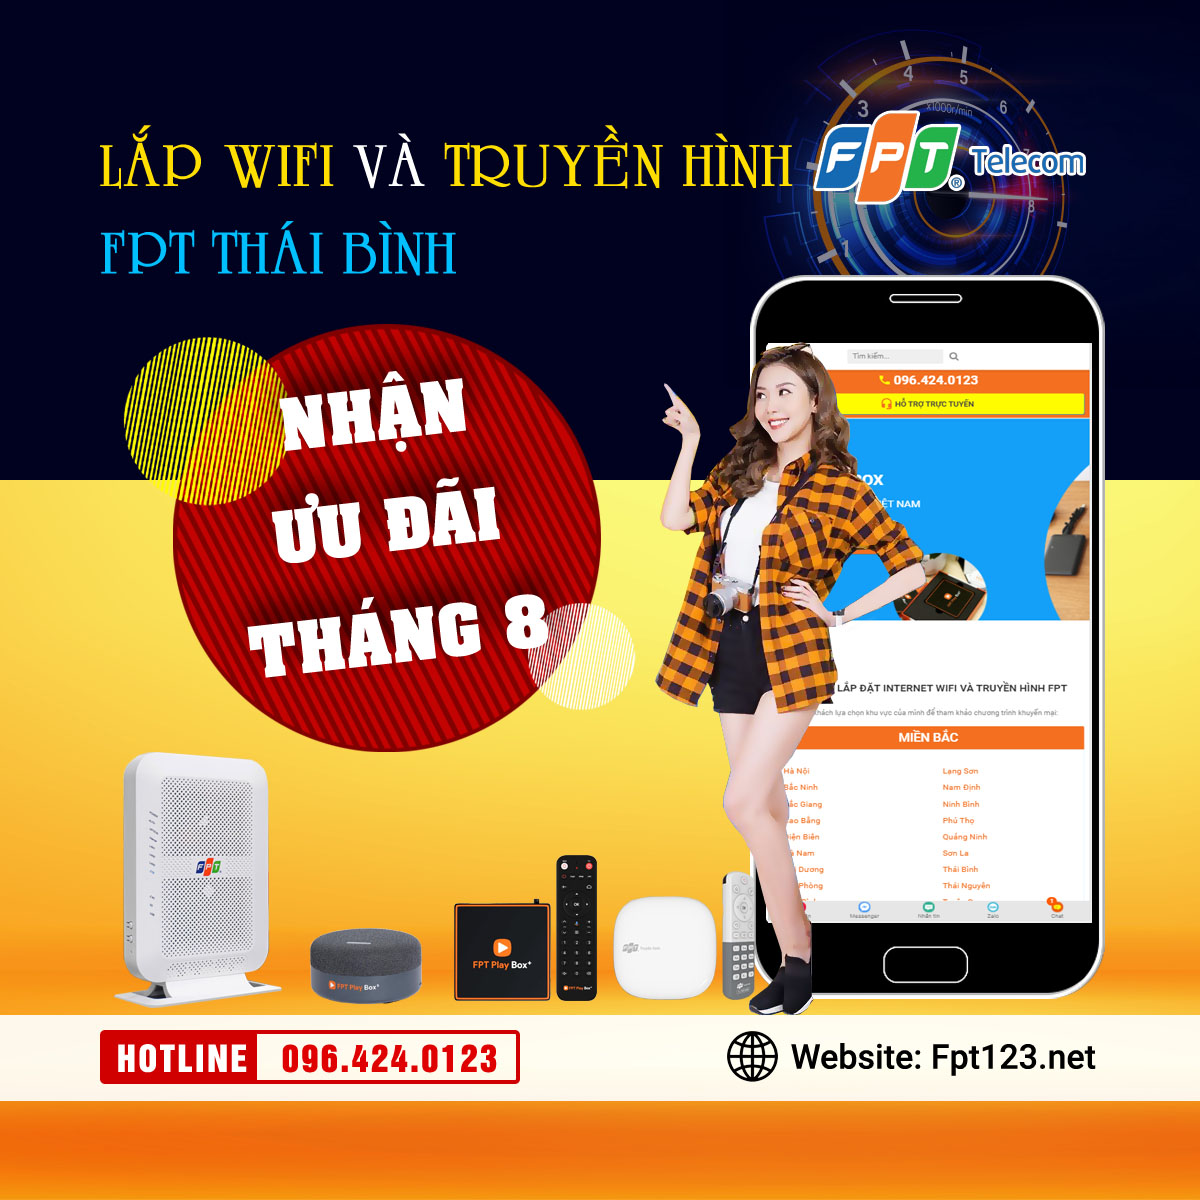 Lắp wifi và truyền hình FPT Thái Bình khuyến mãi tháng 8